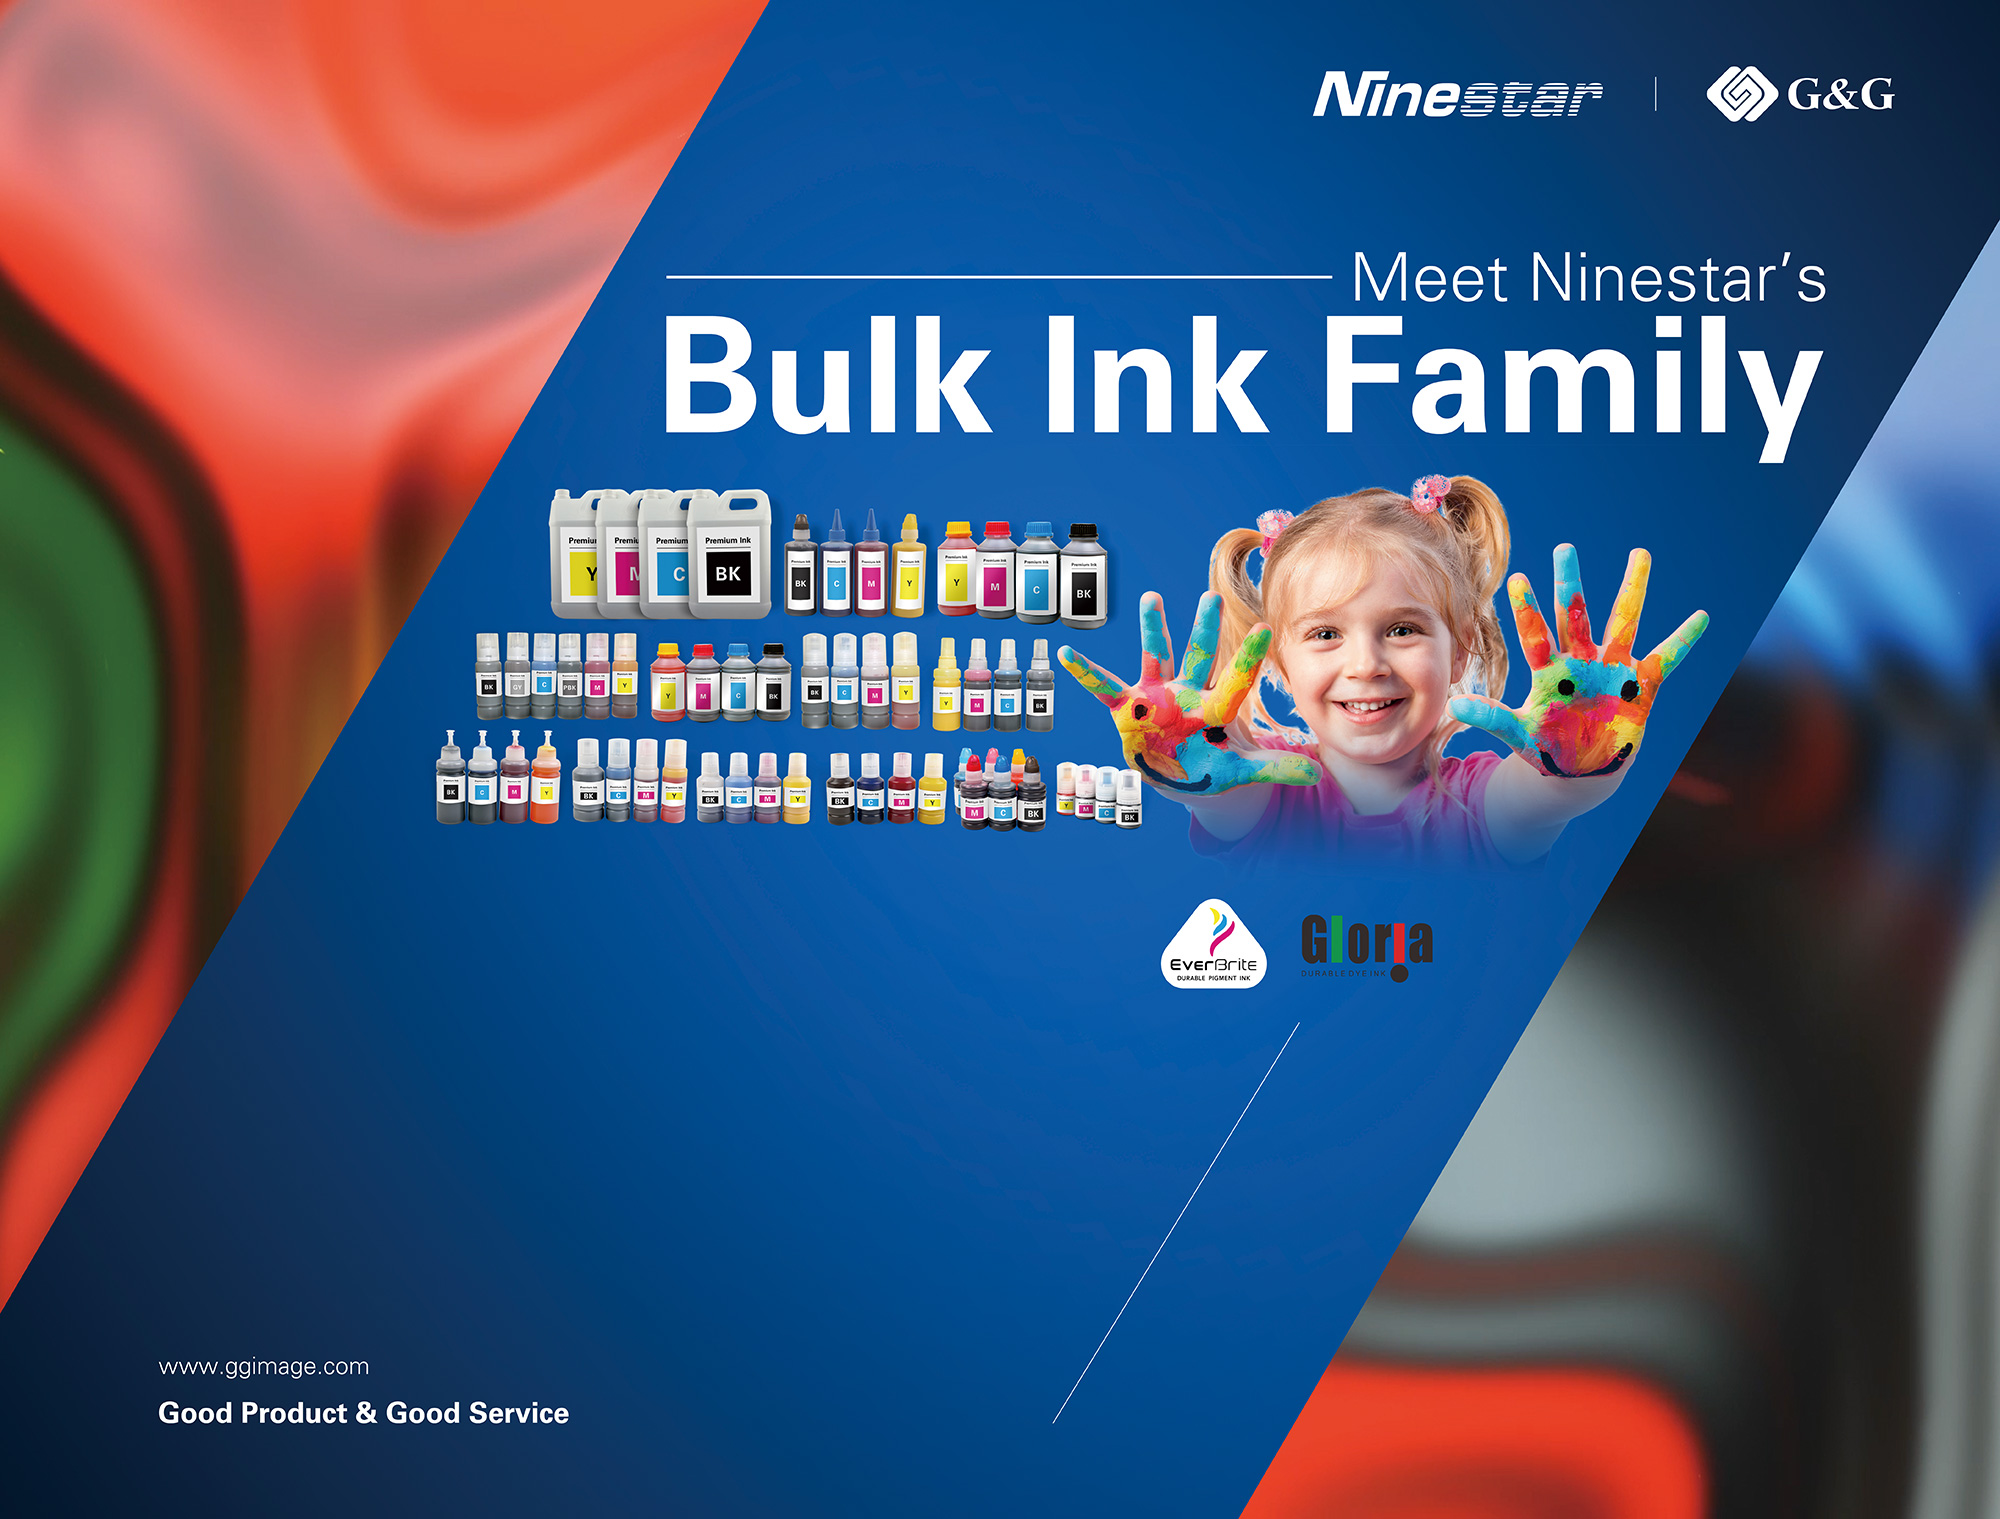  bulk ink family-G&G Image